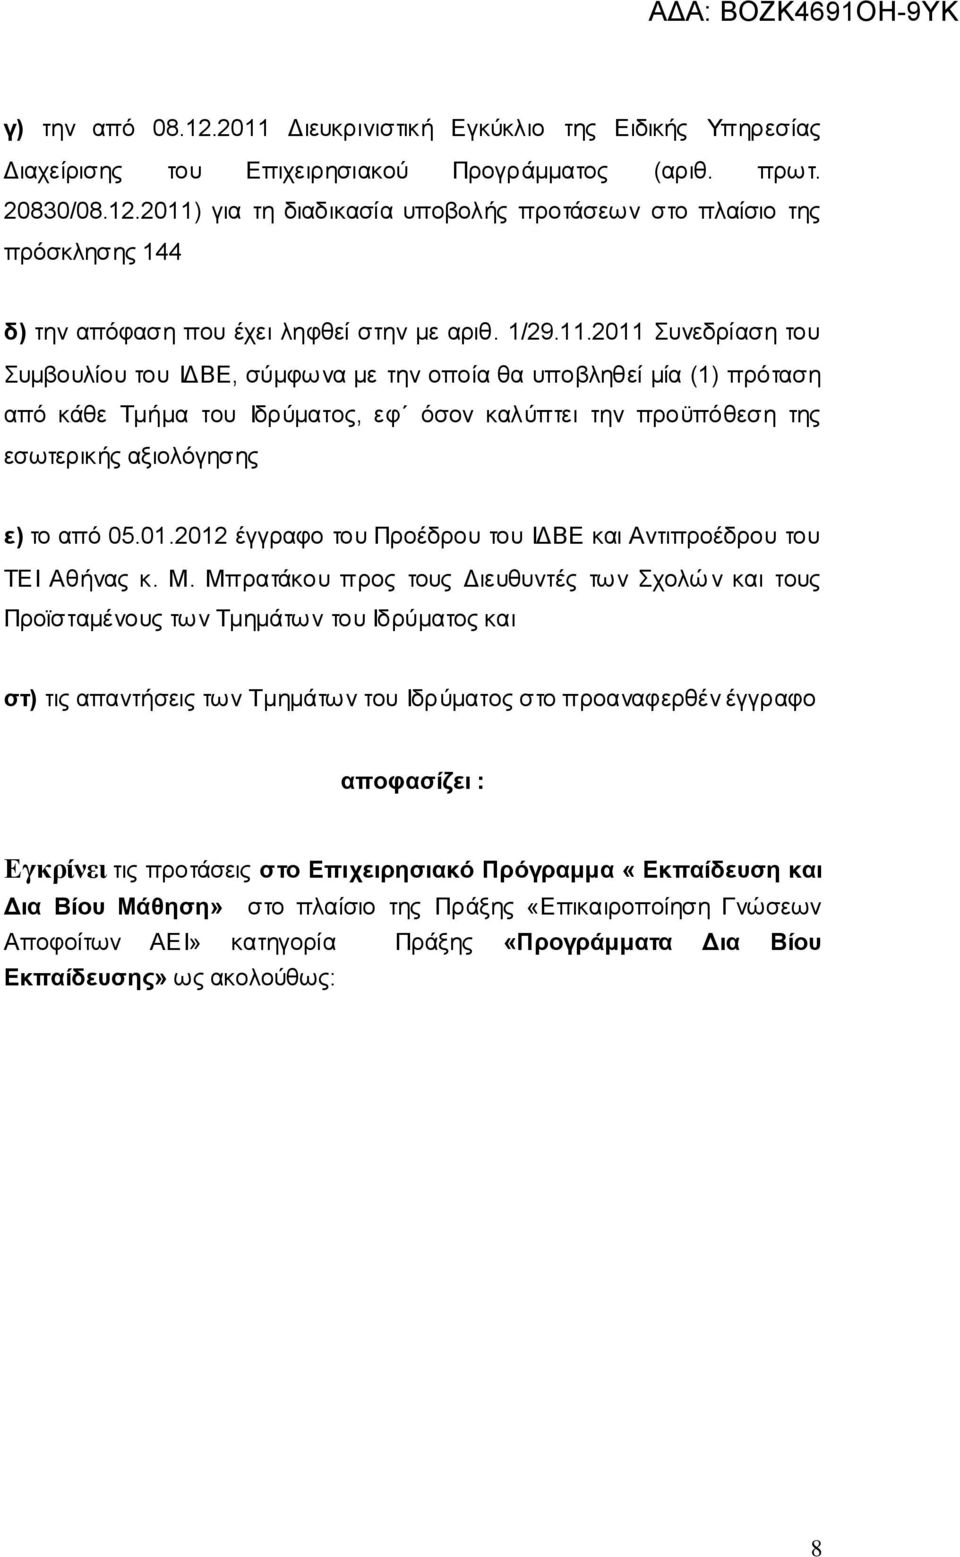 2011 Συνεδρίαση του Συμβουλίου του ΙΔΒΕ, σύμφωνα με την οποία θα υποβληθεί μία (1) πρόταση από κάθε Τμήμα του Ιδρύματος, εφ όσον καλύπτει την προϋπόθεση της εσωτερικής αξιολόγησης ε) το από 05.01.2012 έγγραφο του Προέδρου του ΙΔΒΕ και Αντιπροέδρου του ΤΕΙ Αθήνας κ.